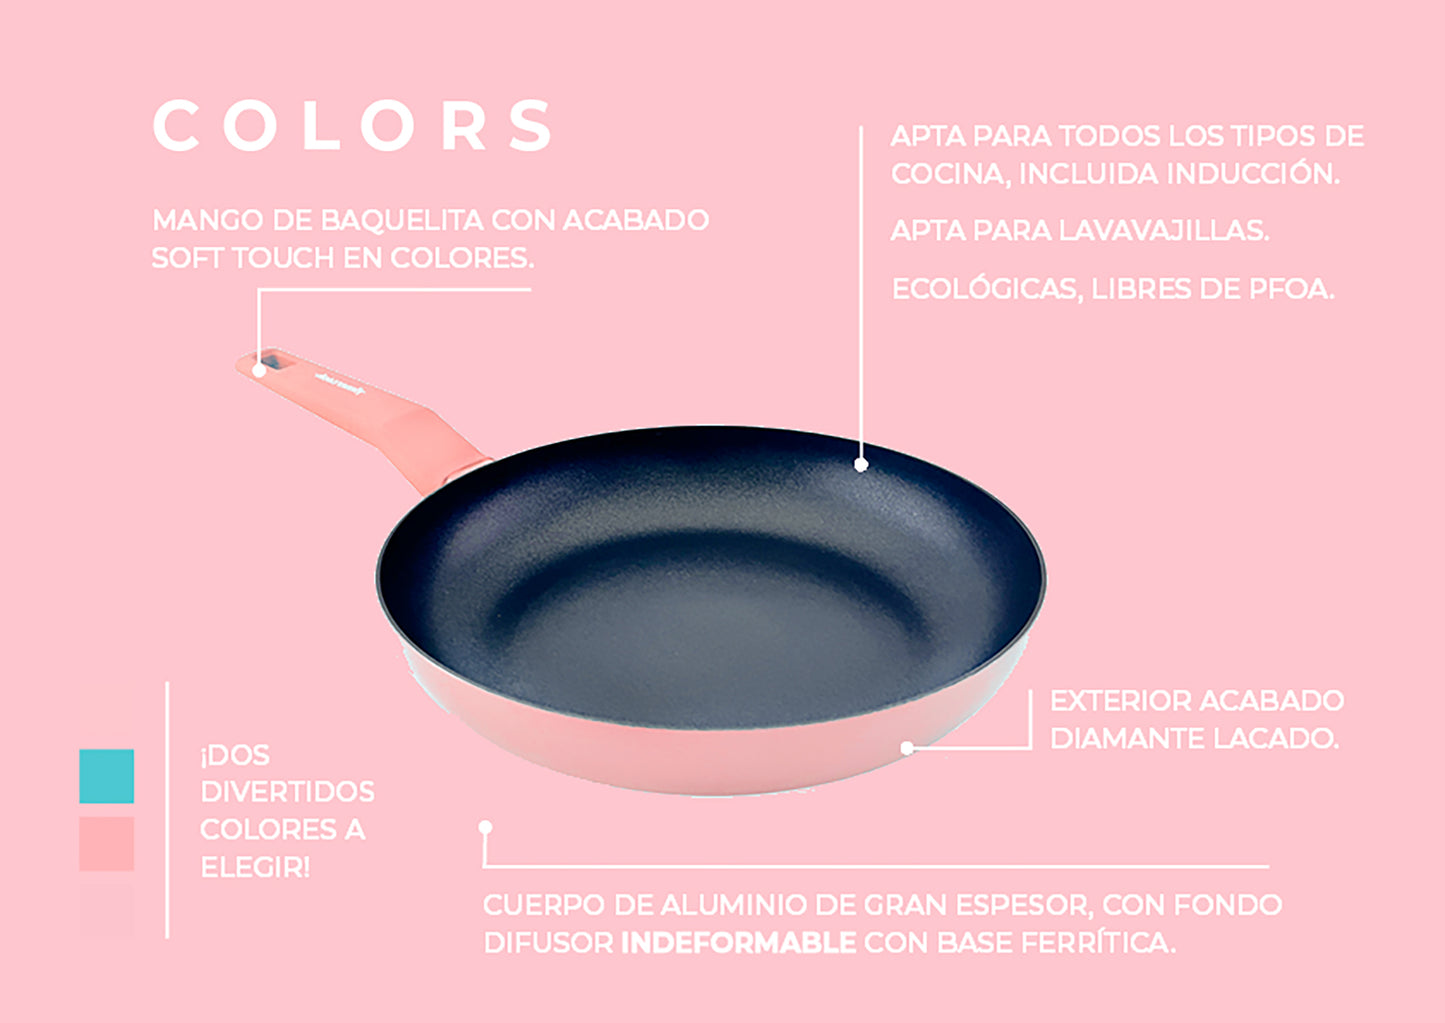 Juego de 3 sartenes COLORS rosa pastel de 20, 24 y 28 cms Ø, aptas para todo tipo de cocina incluso inducción